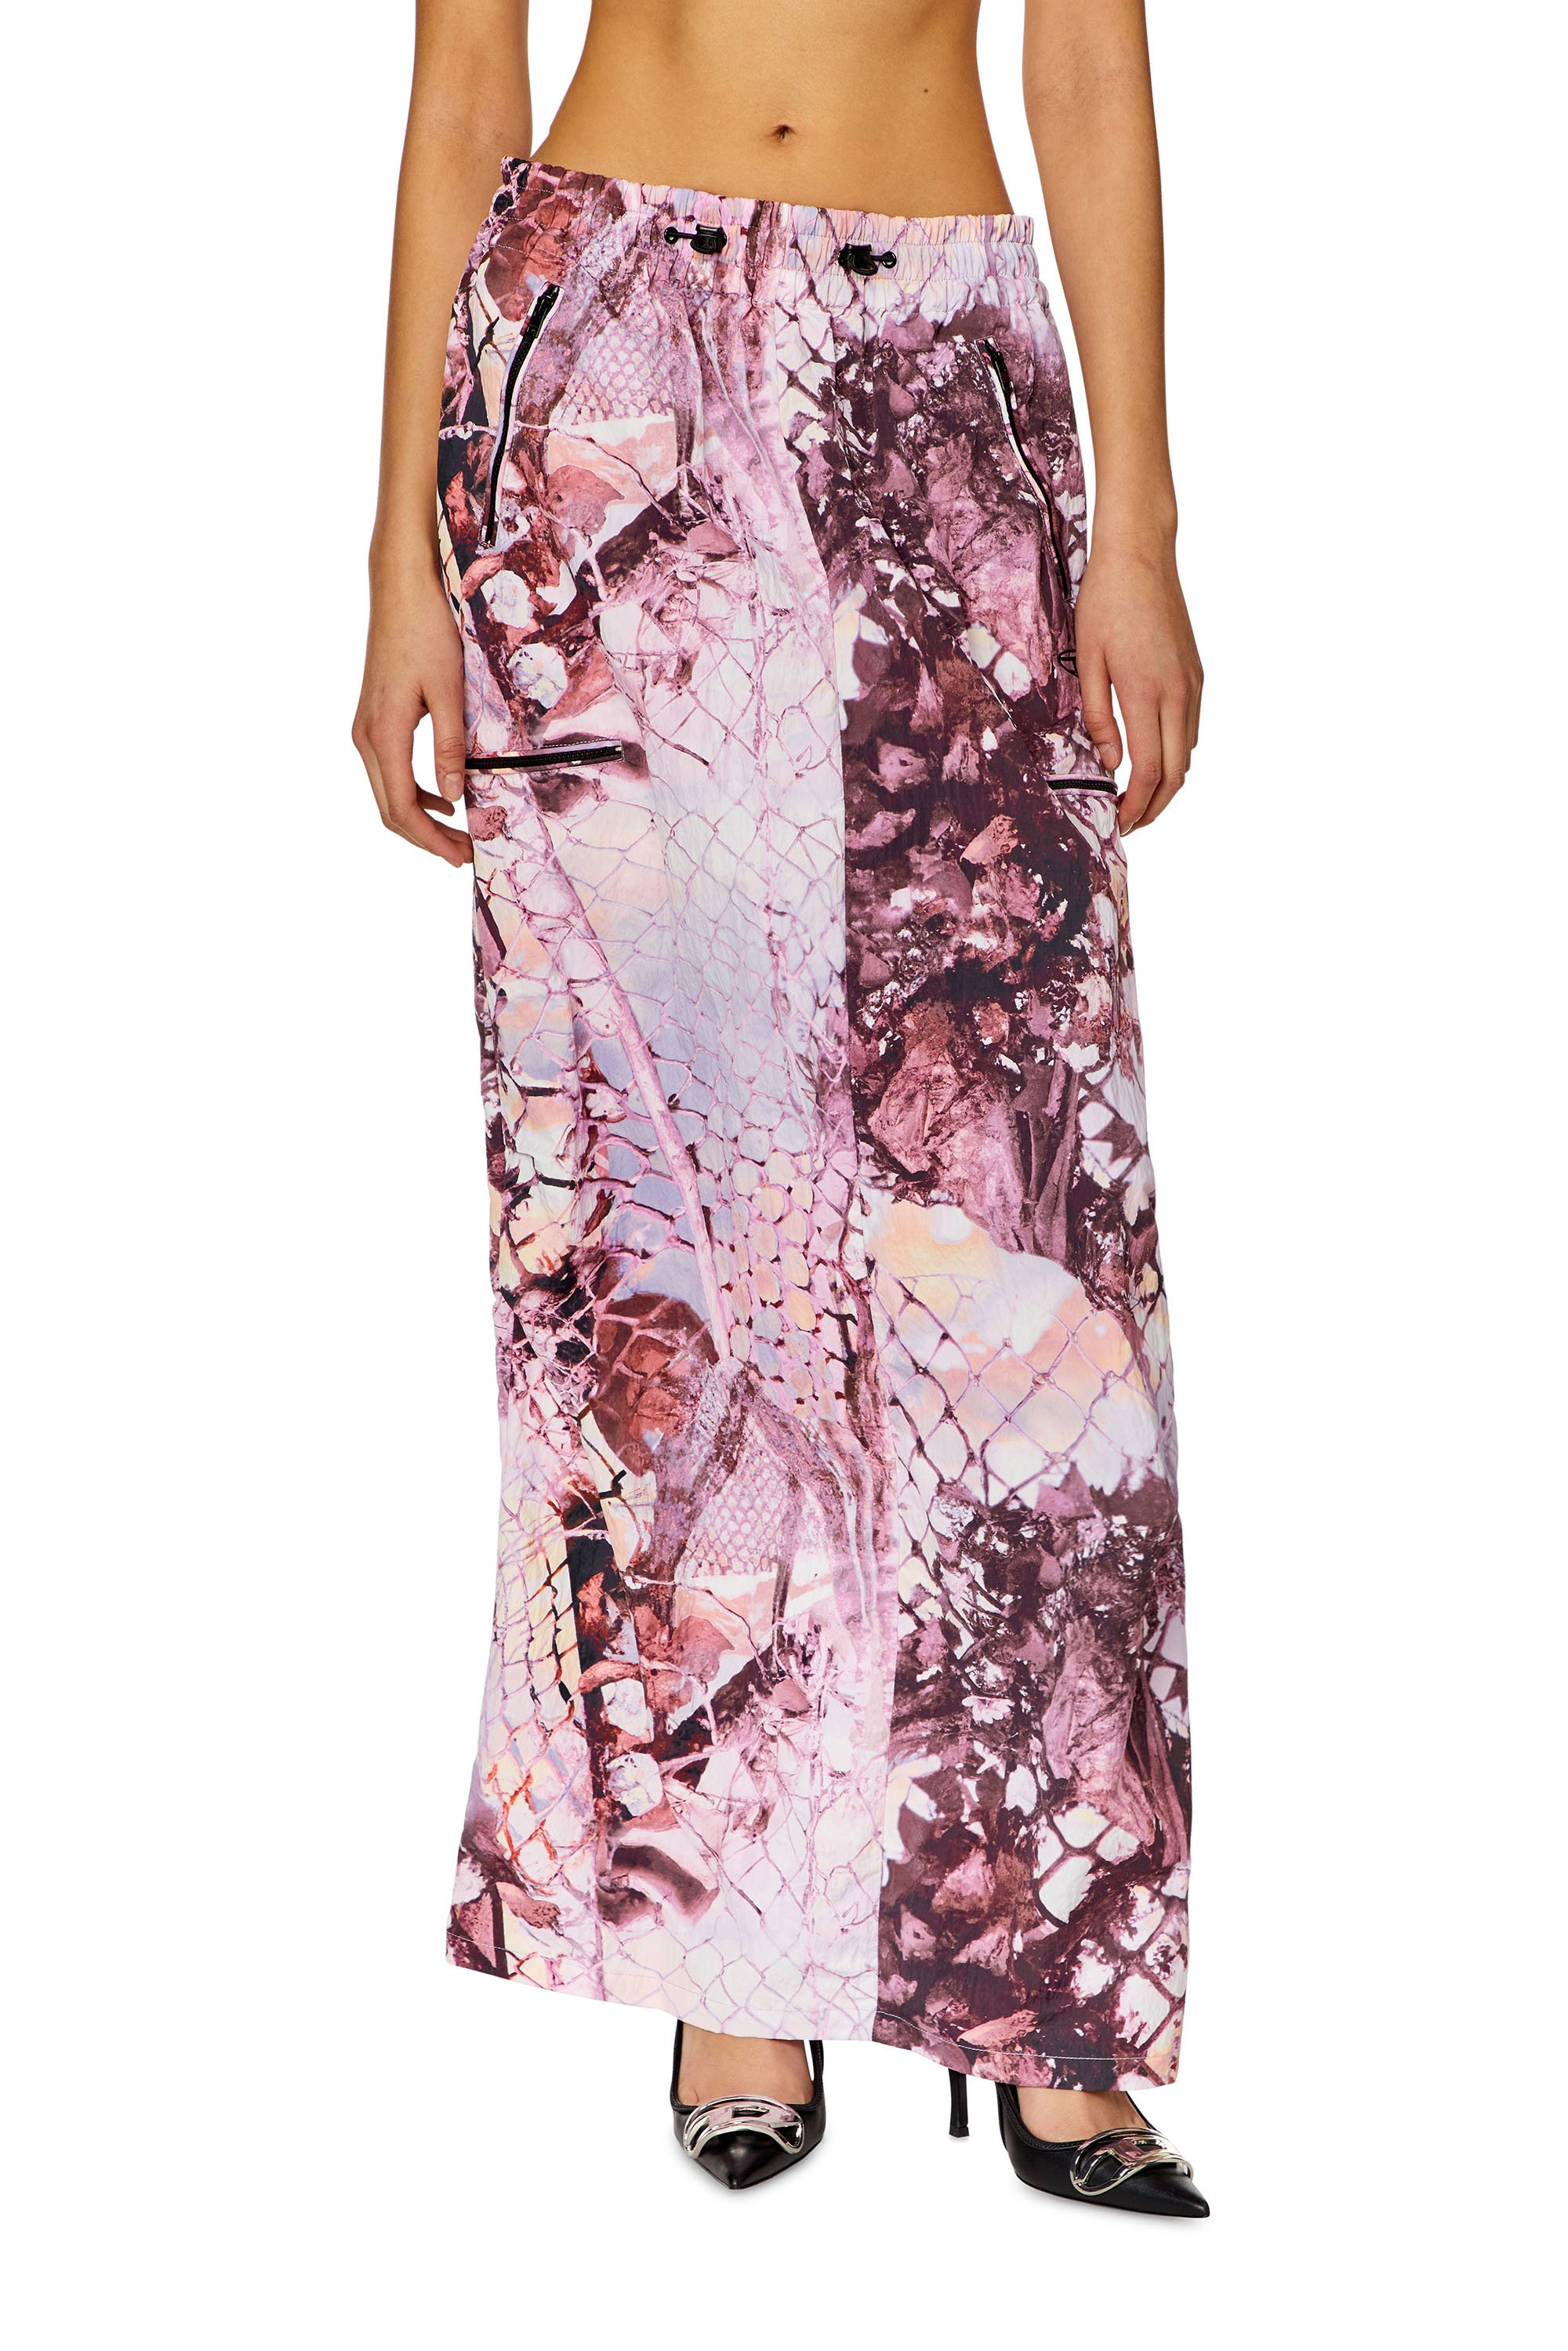 Diesel - O-DIAMY-N1, Woman Long skirt in printed crinkled nylon in Violet - Image 1